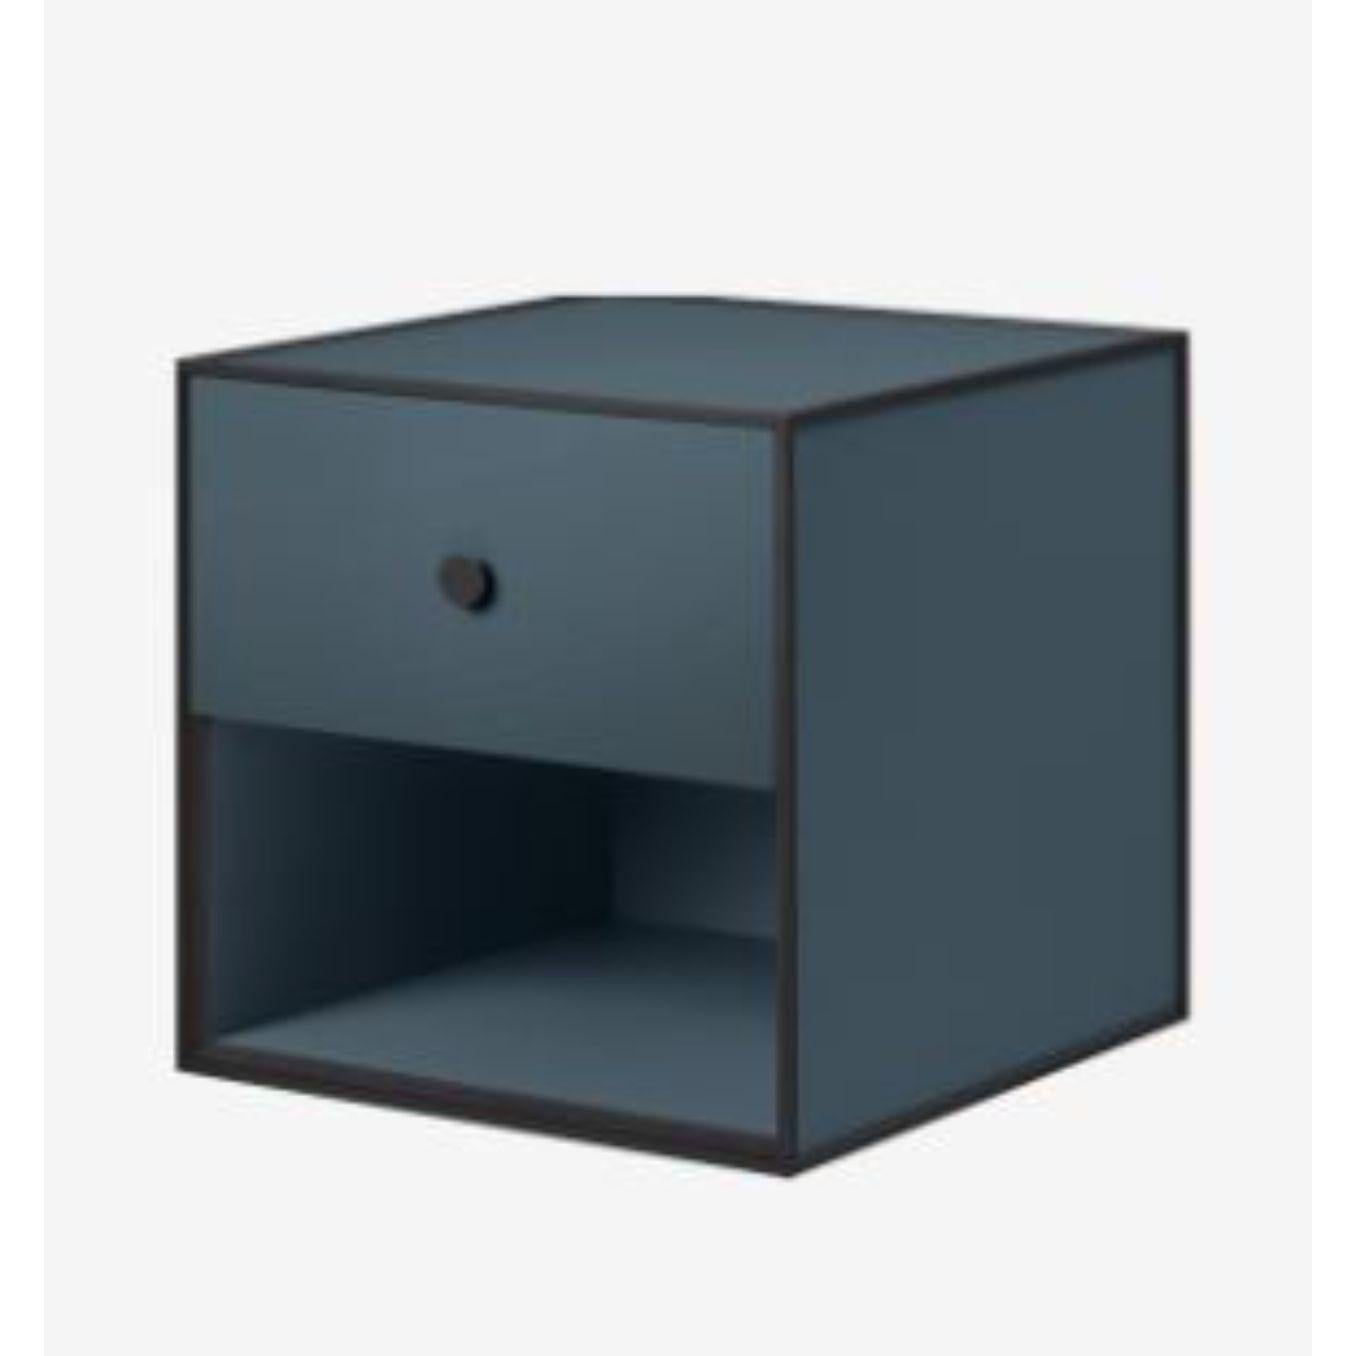 35 Fjordrahmenbox mit 1 Schublade von Lassen
Abmessungen: B 35 x T 35 x H 35 cm 
MATERIALIEN: Finér, Melamin, Melamin, Melamin, Metall, Furnier,
Auch in anderen Farben und Abmessungen erhältlich. 

By Lassen ist eine dänische Designmarke, die sich